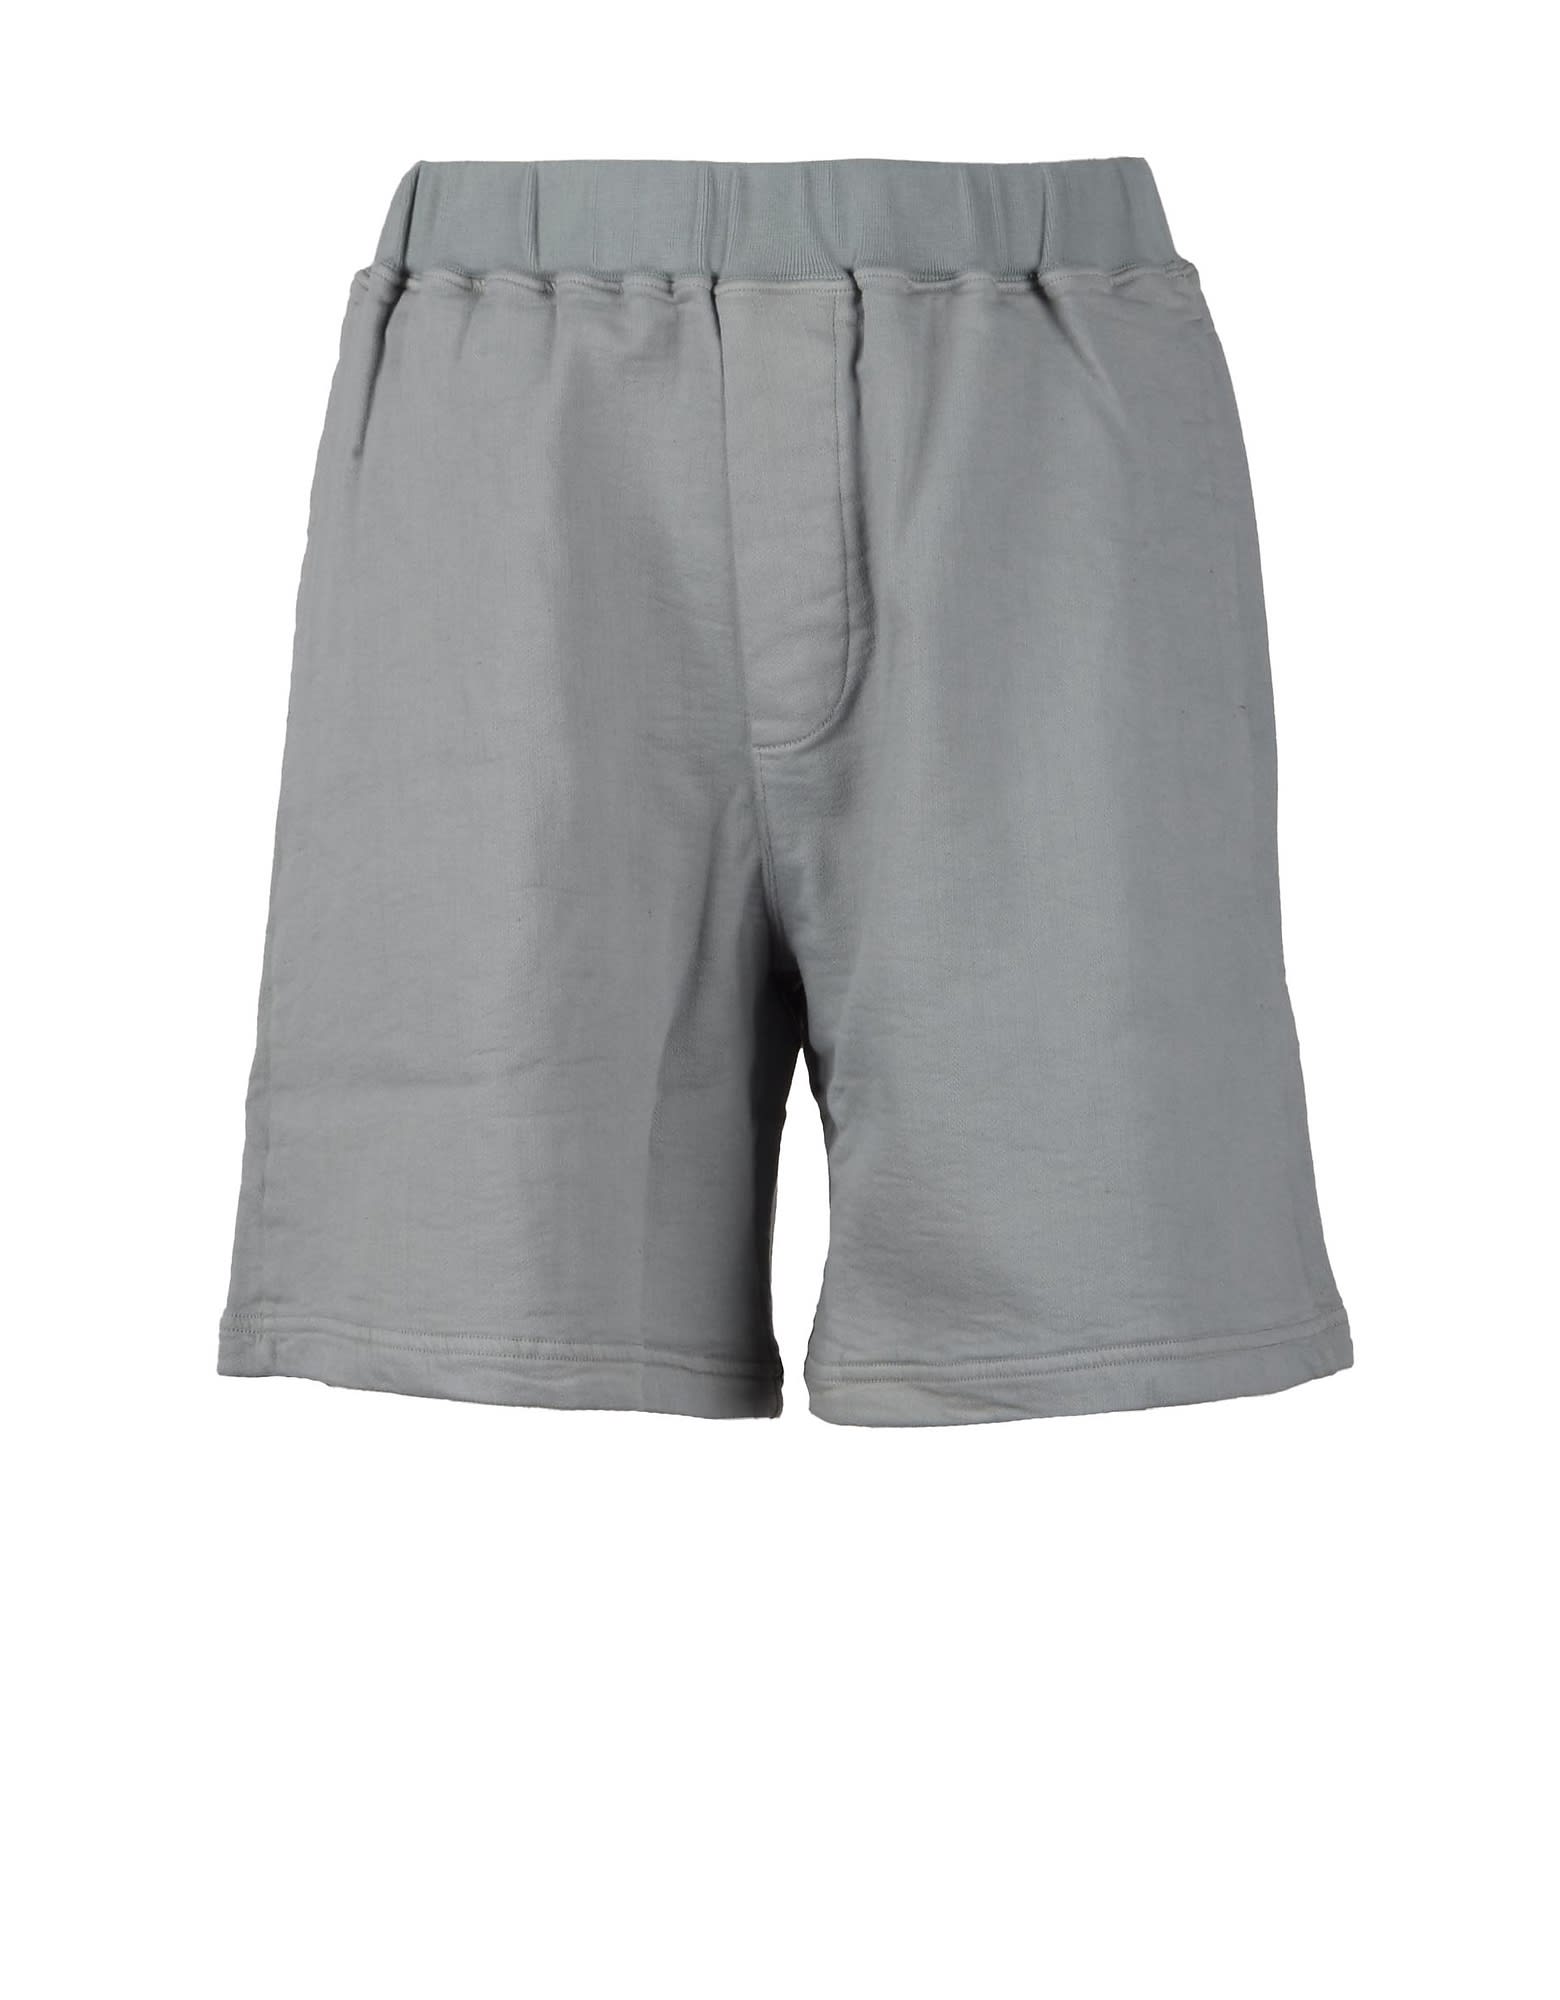 Mens Light Gray Bermuda Shorts